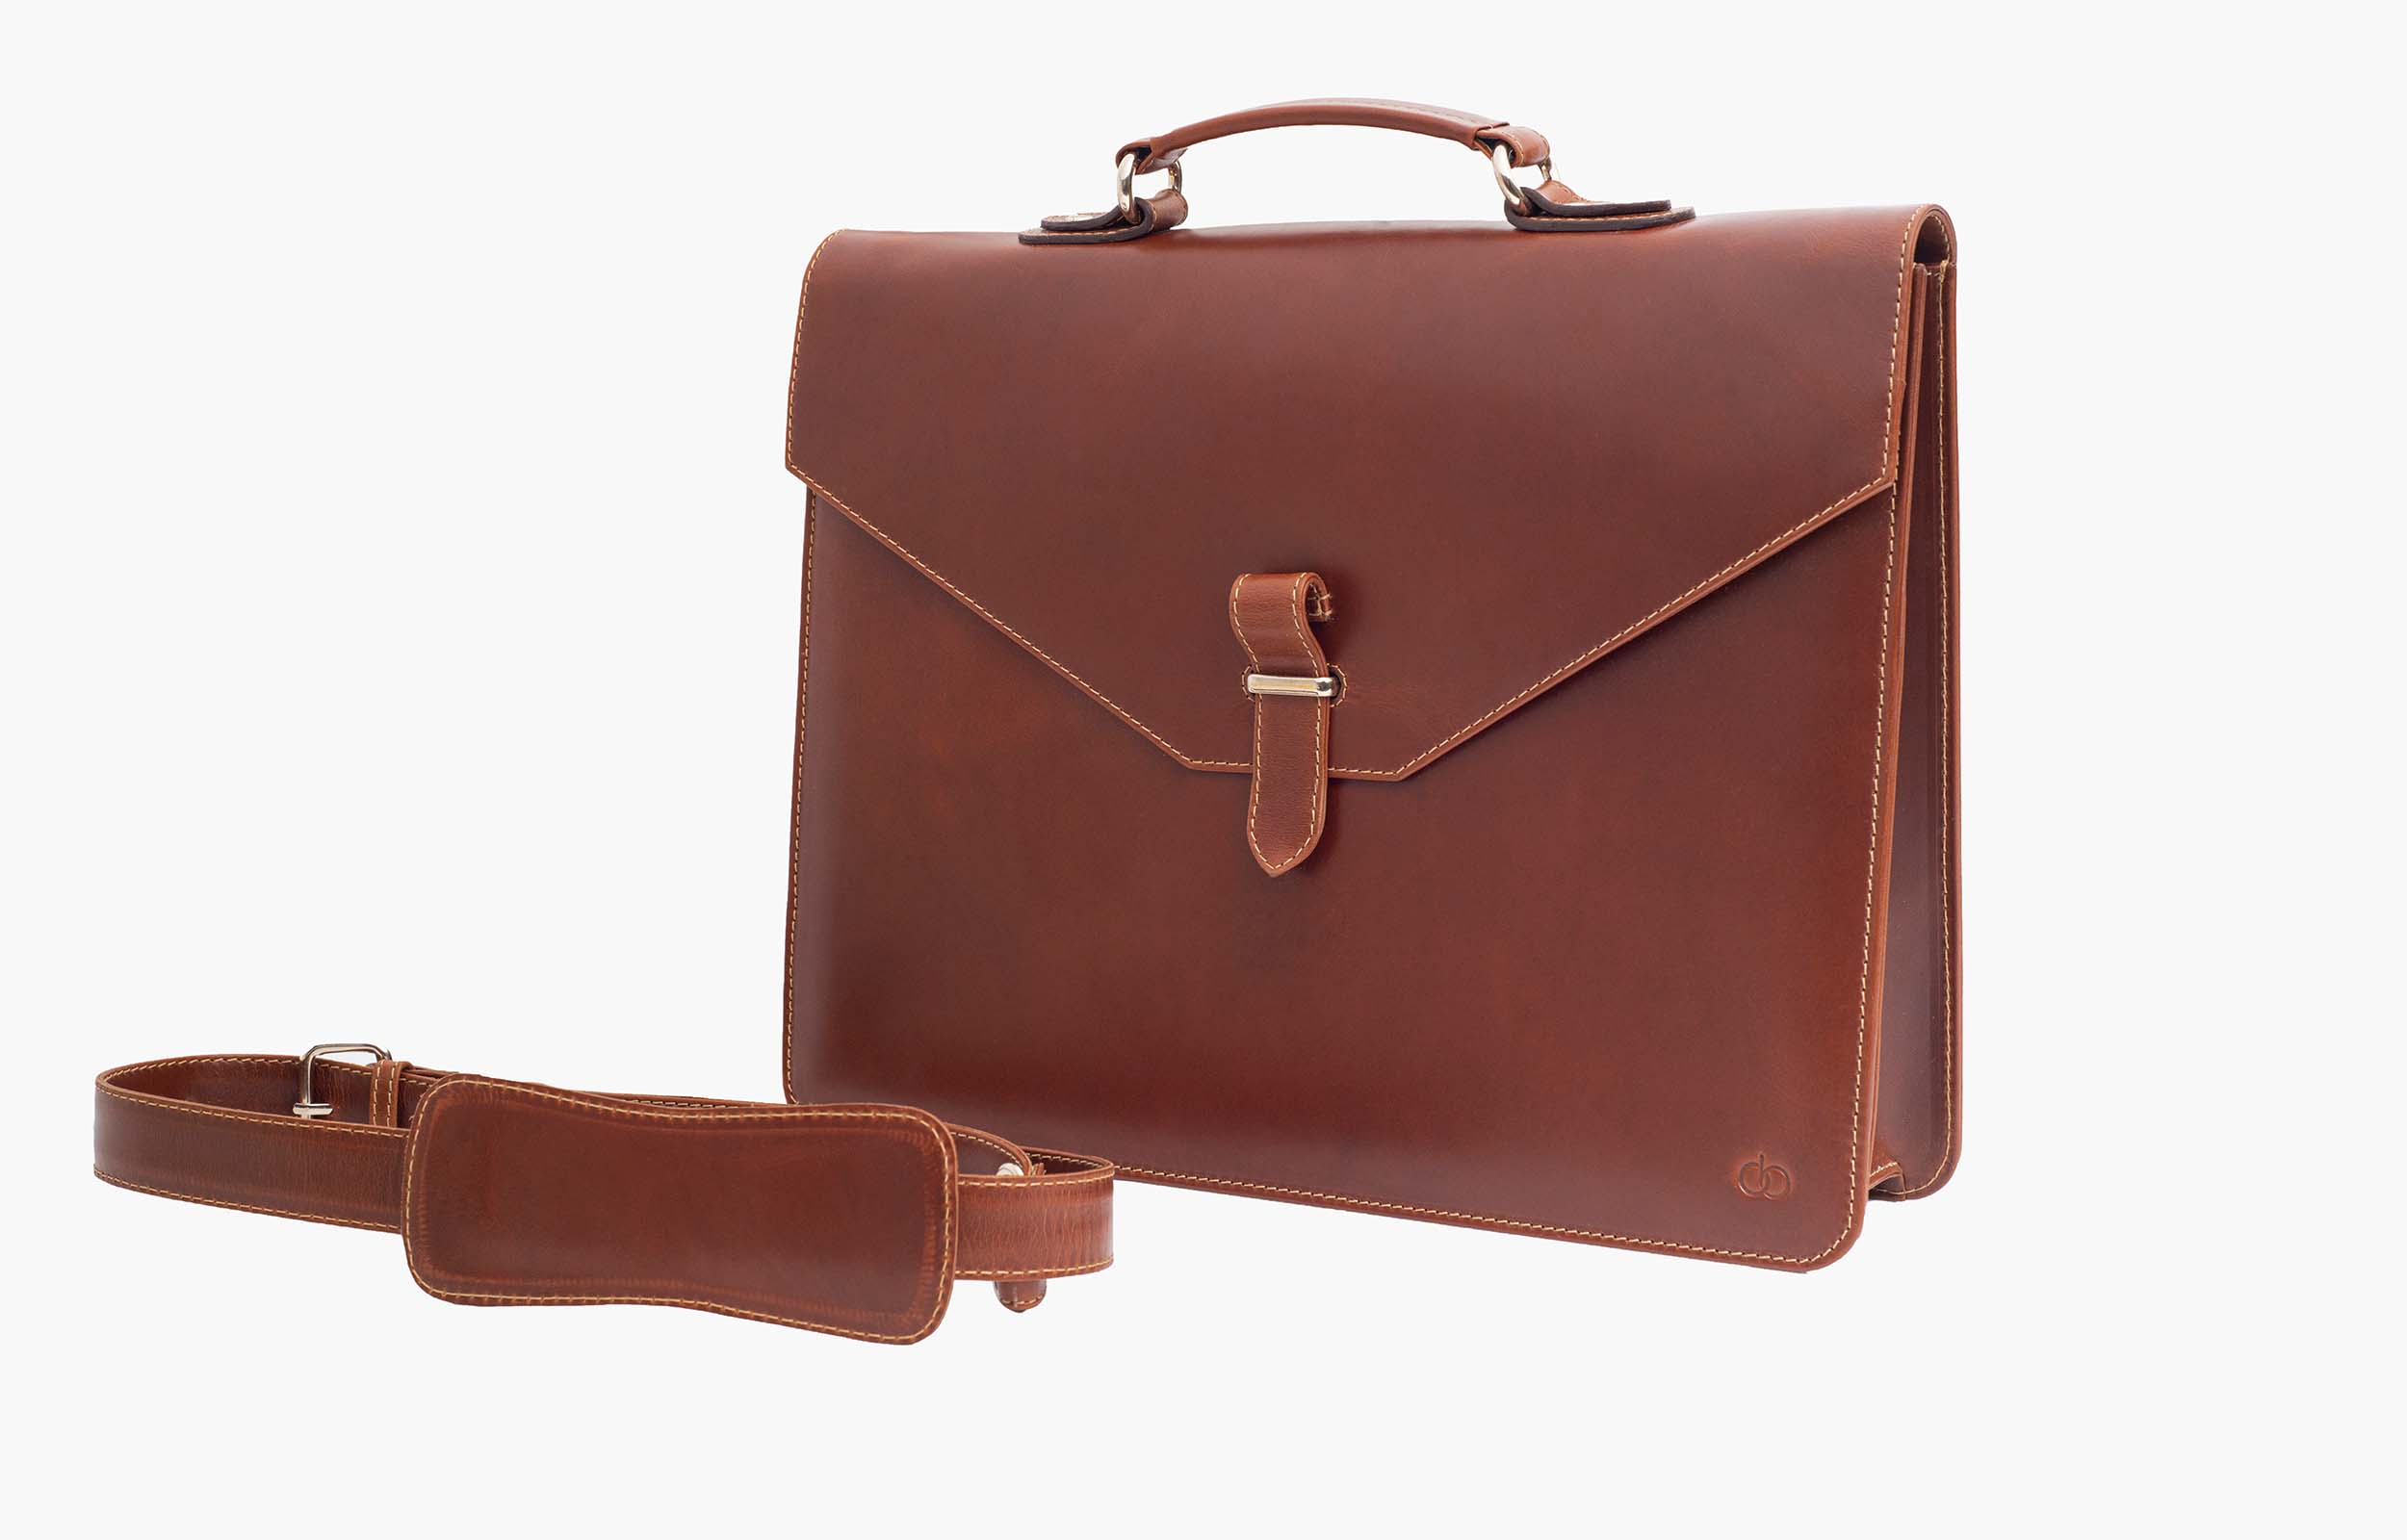 Oscar Geneva Brown Leather Bag UK 5